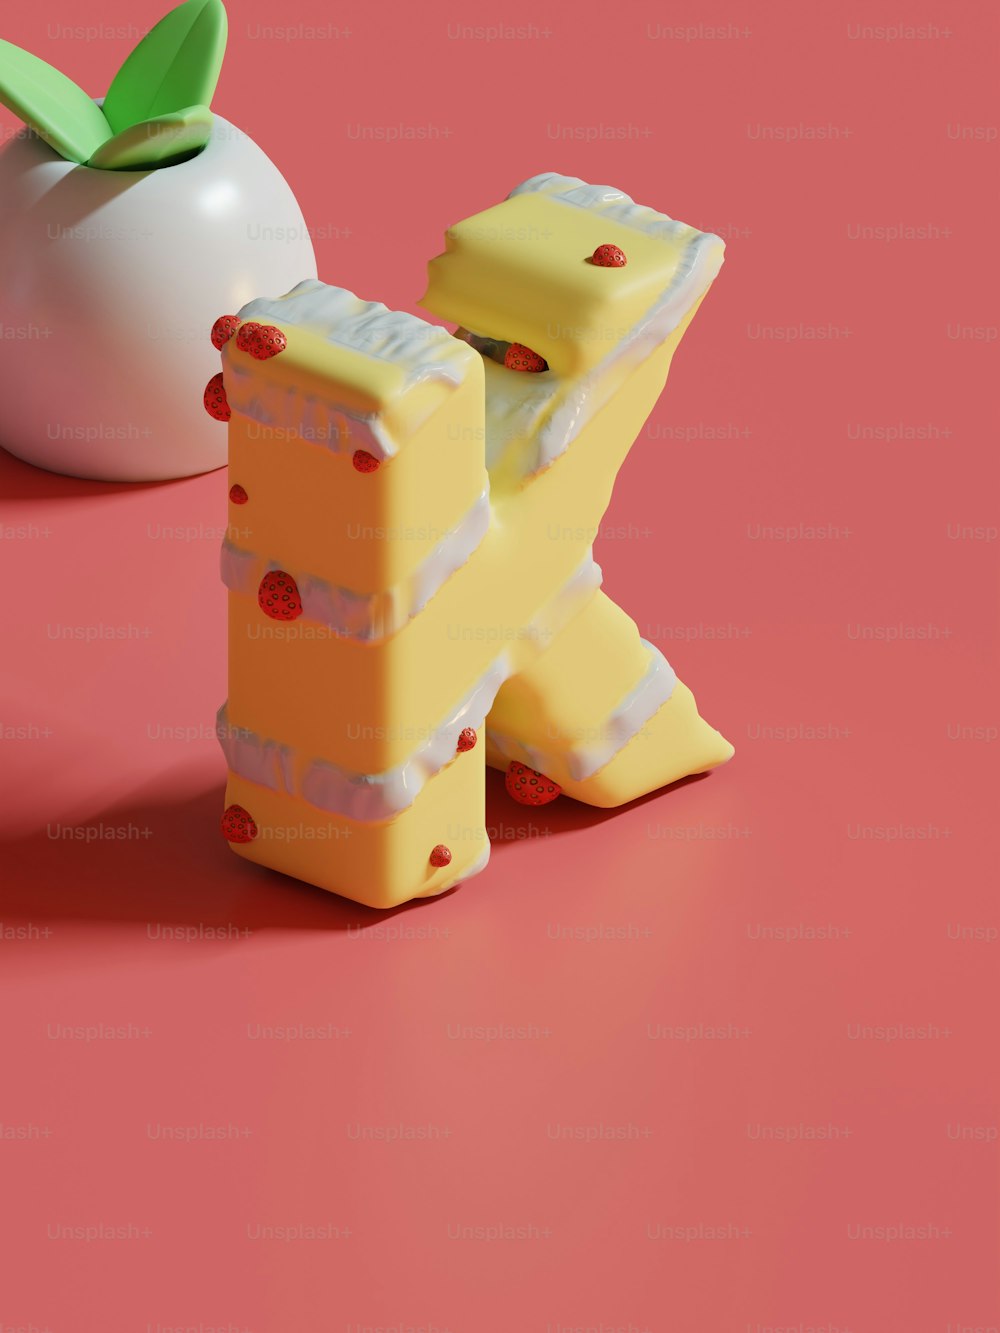 Un trozo de queso sentado junto a una manzana sobre una superficie rosada